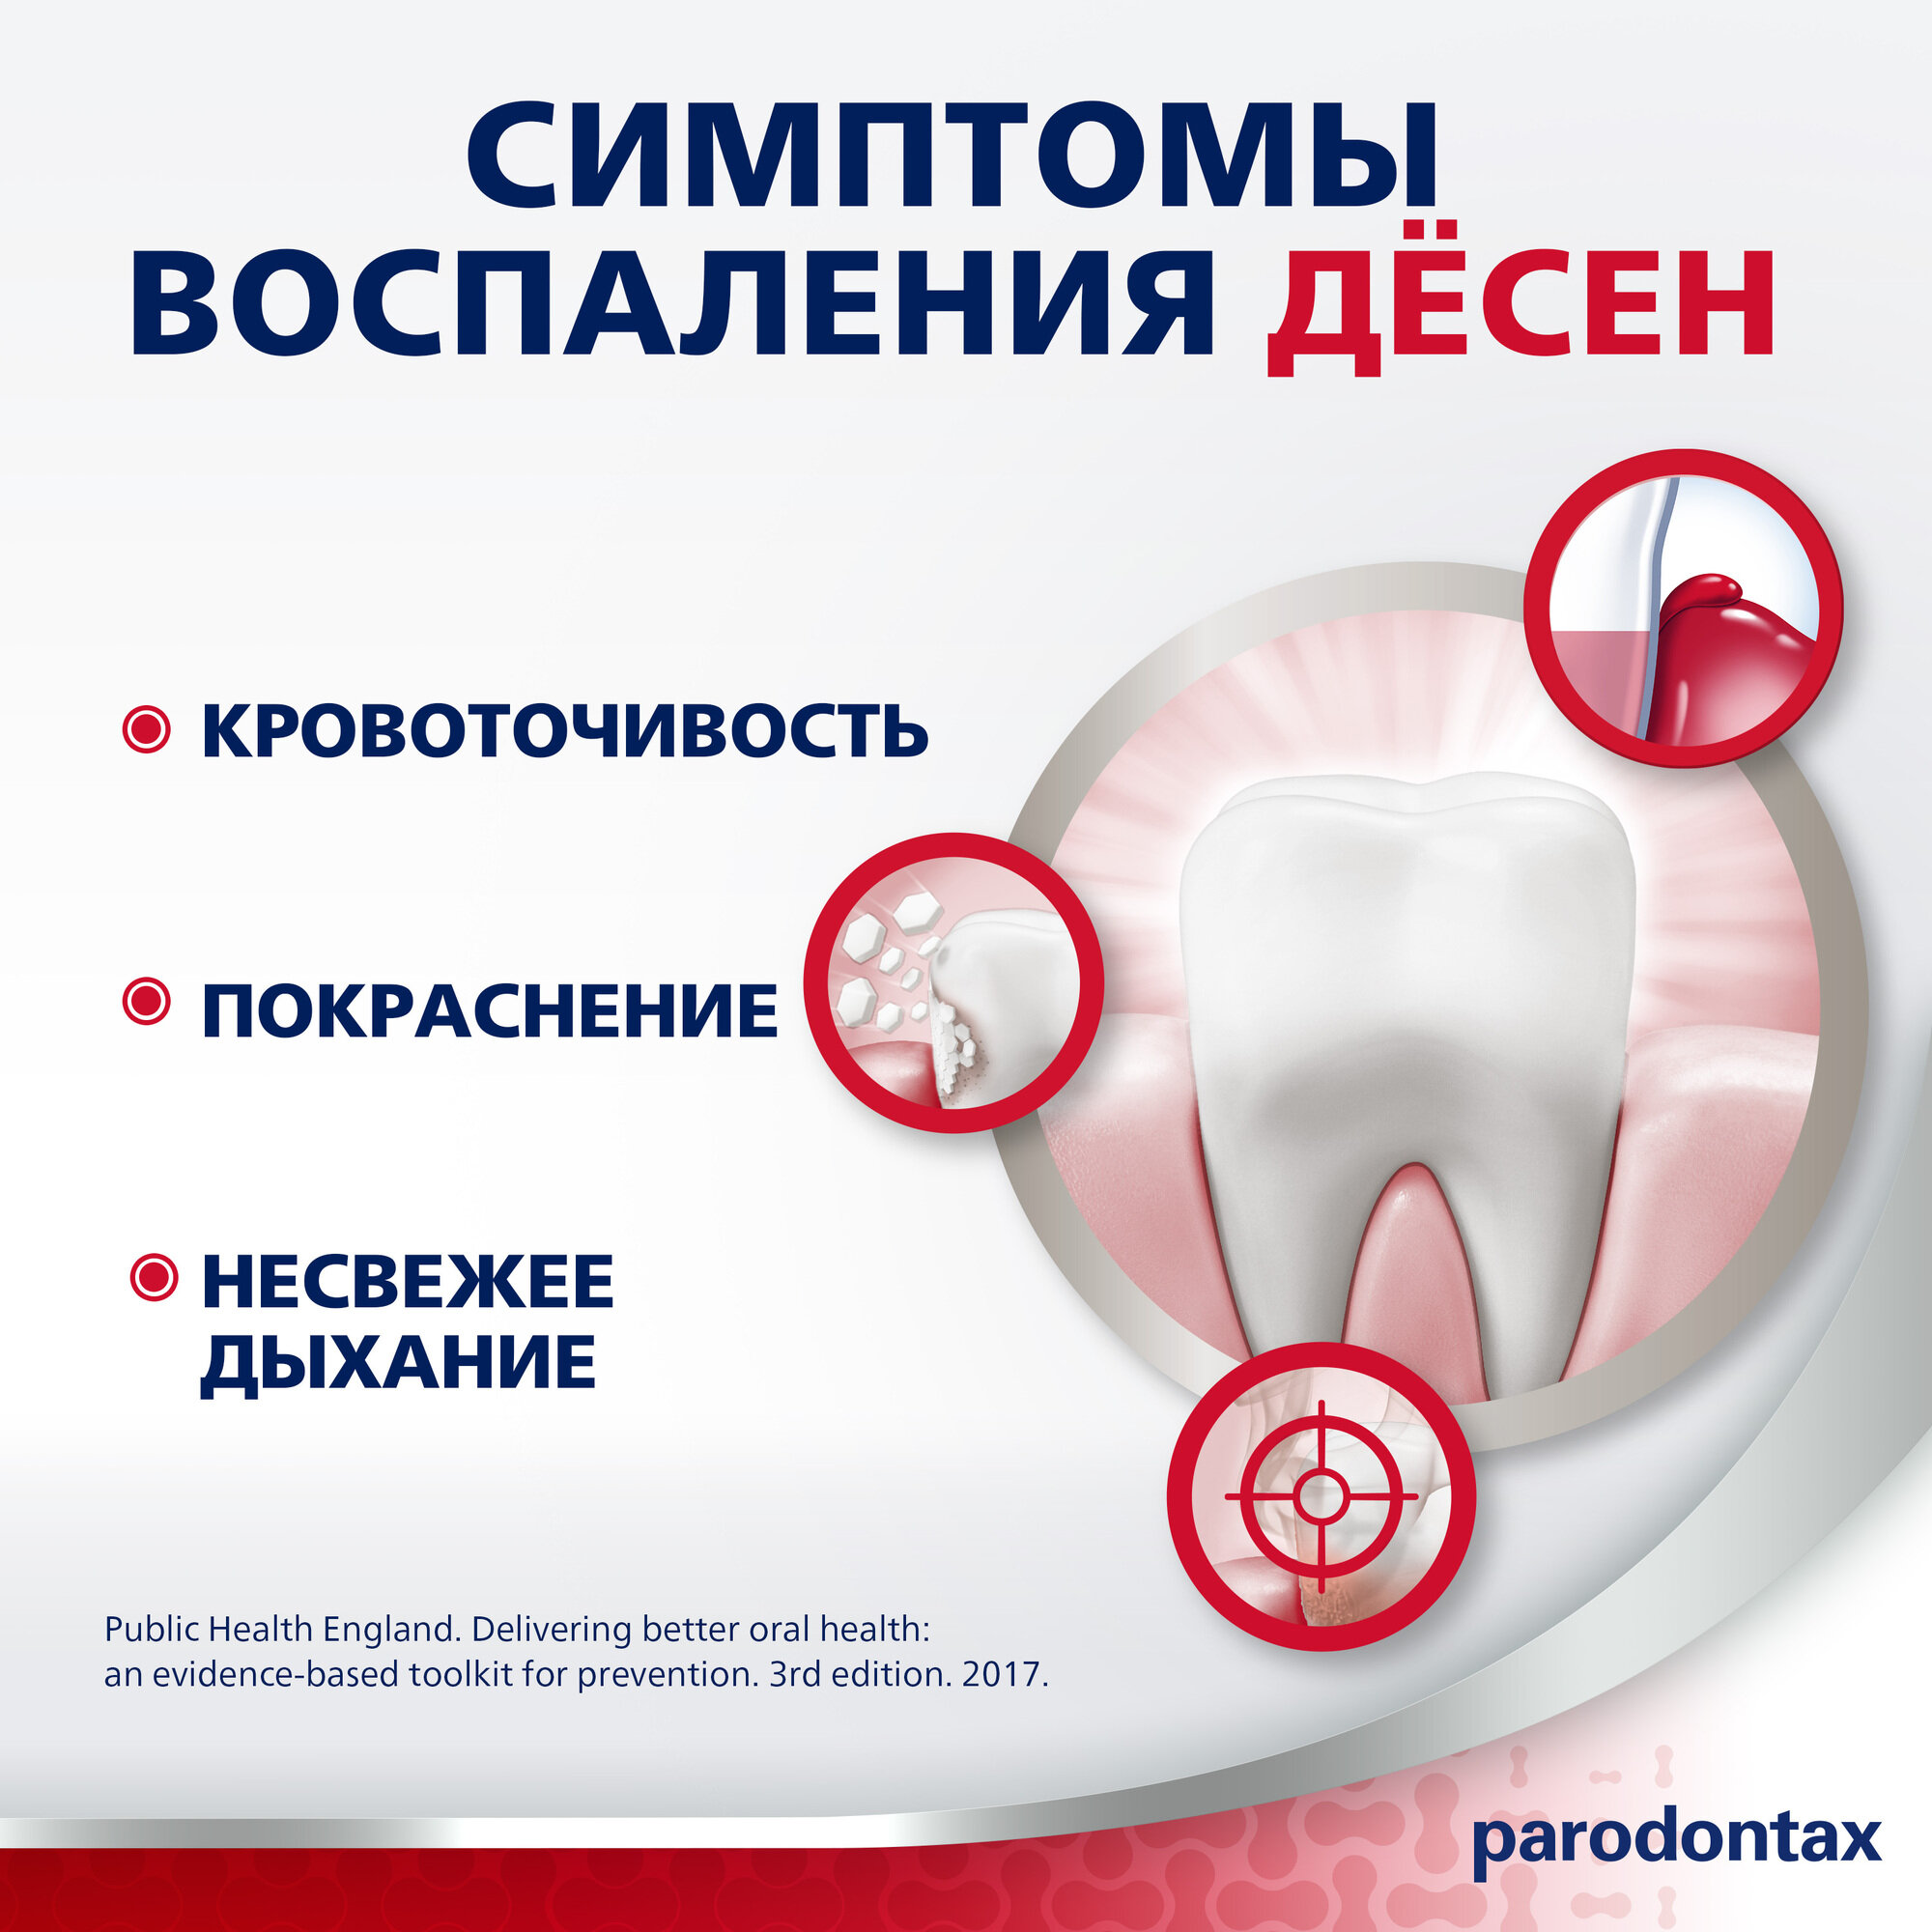 Зубная паста parodontax с Фтором от кровоточивости десен для удаления зубного налета, поддержания здоровья десен и укрепления зубов, 75мл*2шт